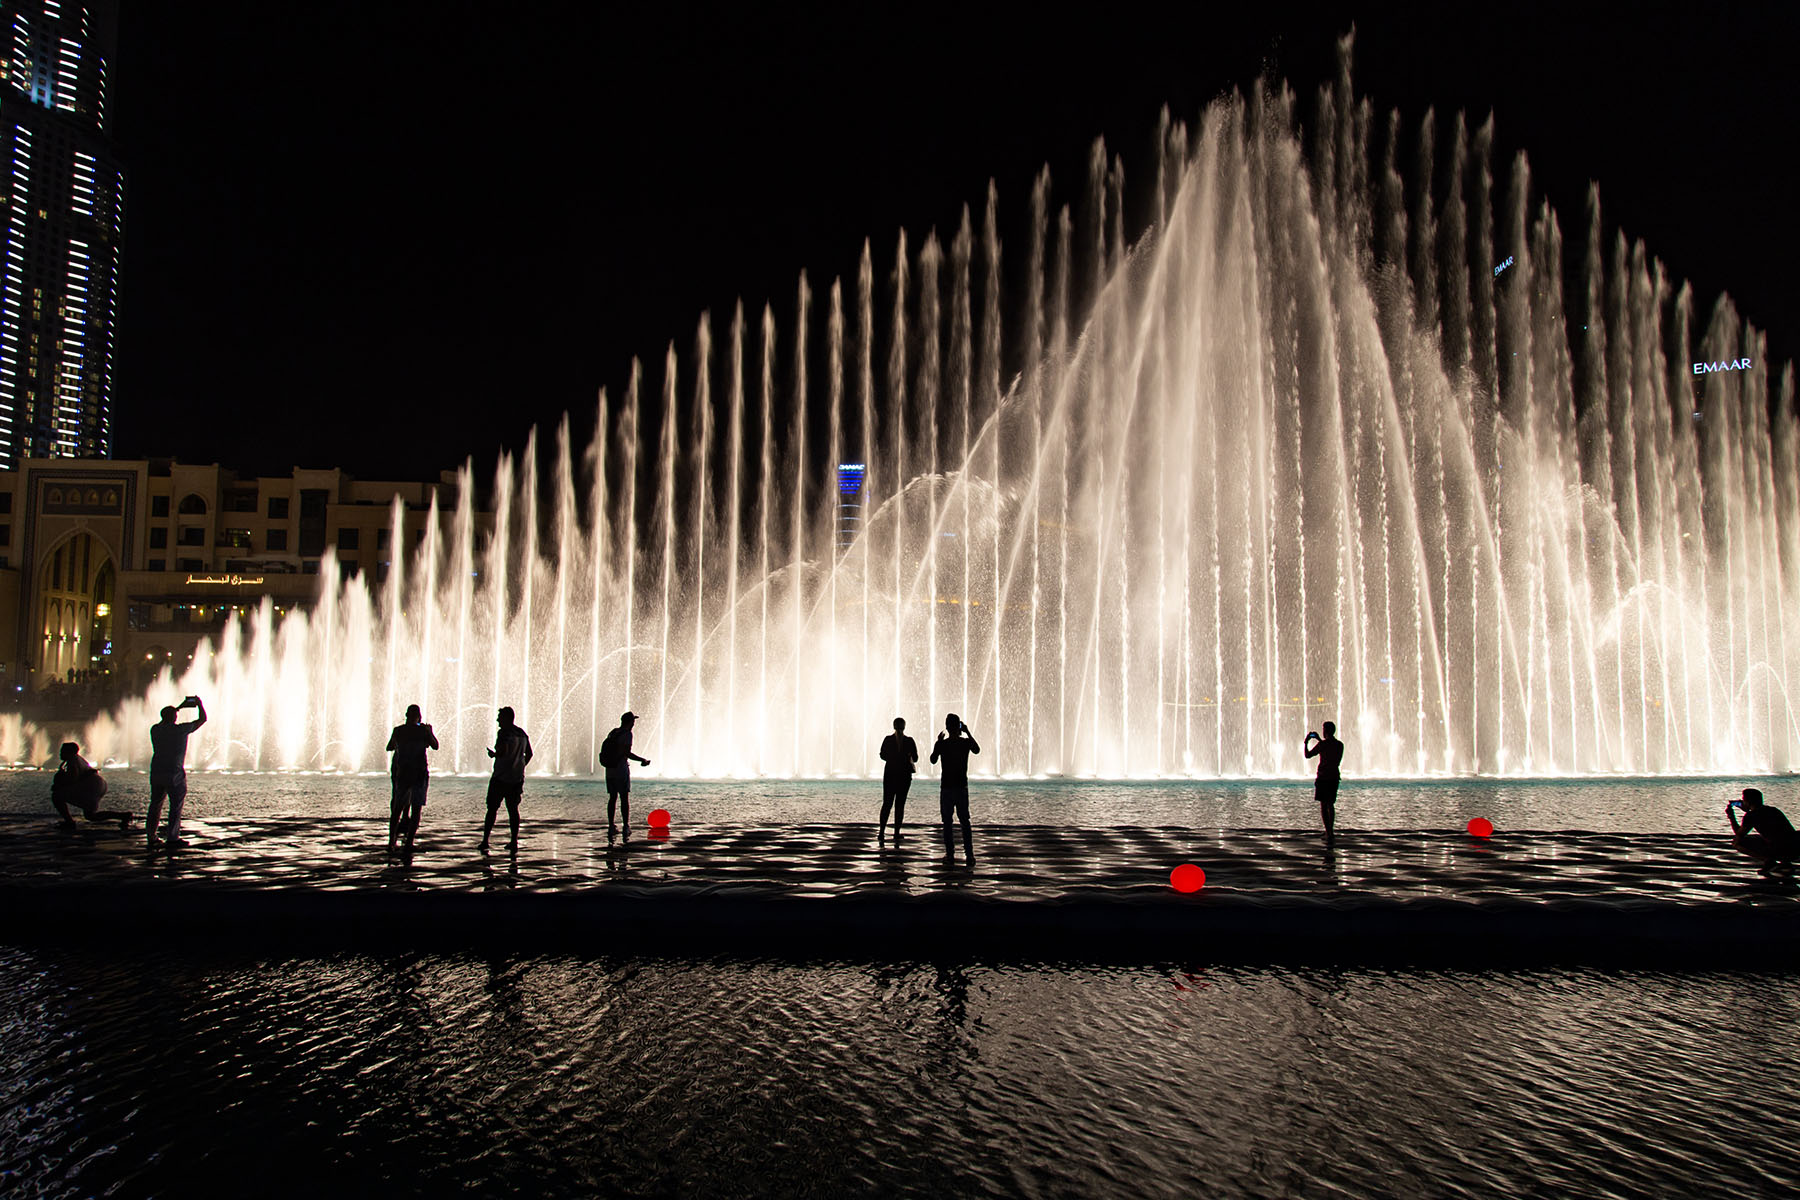 Dubai Fountain Boardwalk